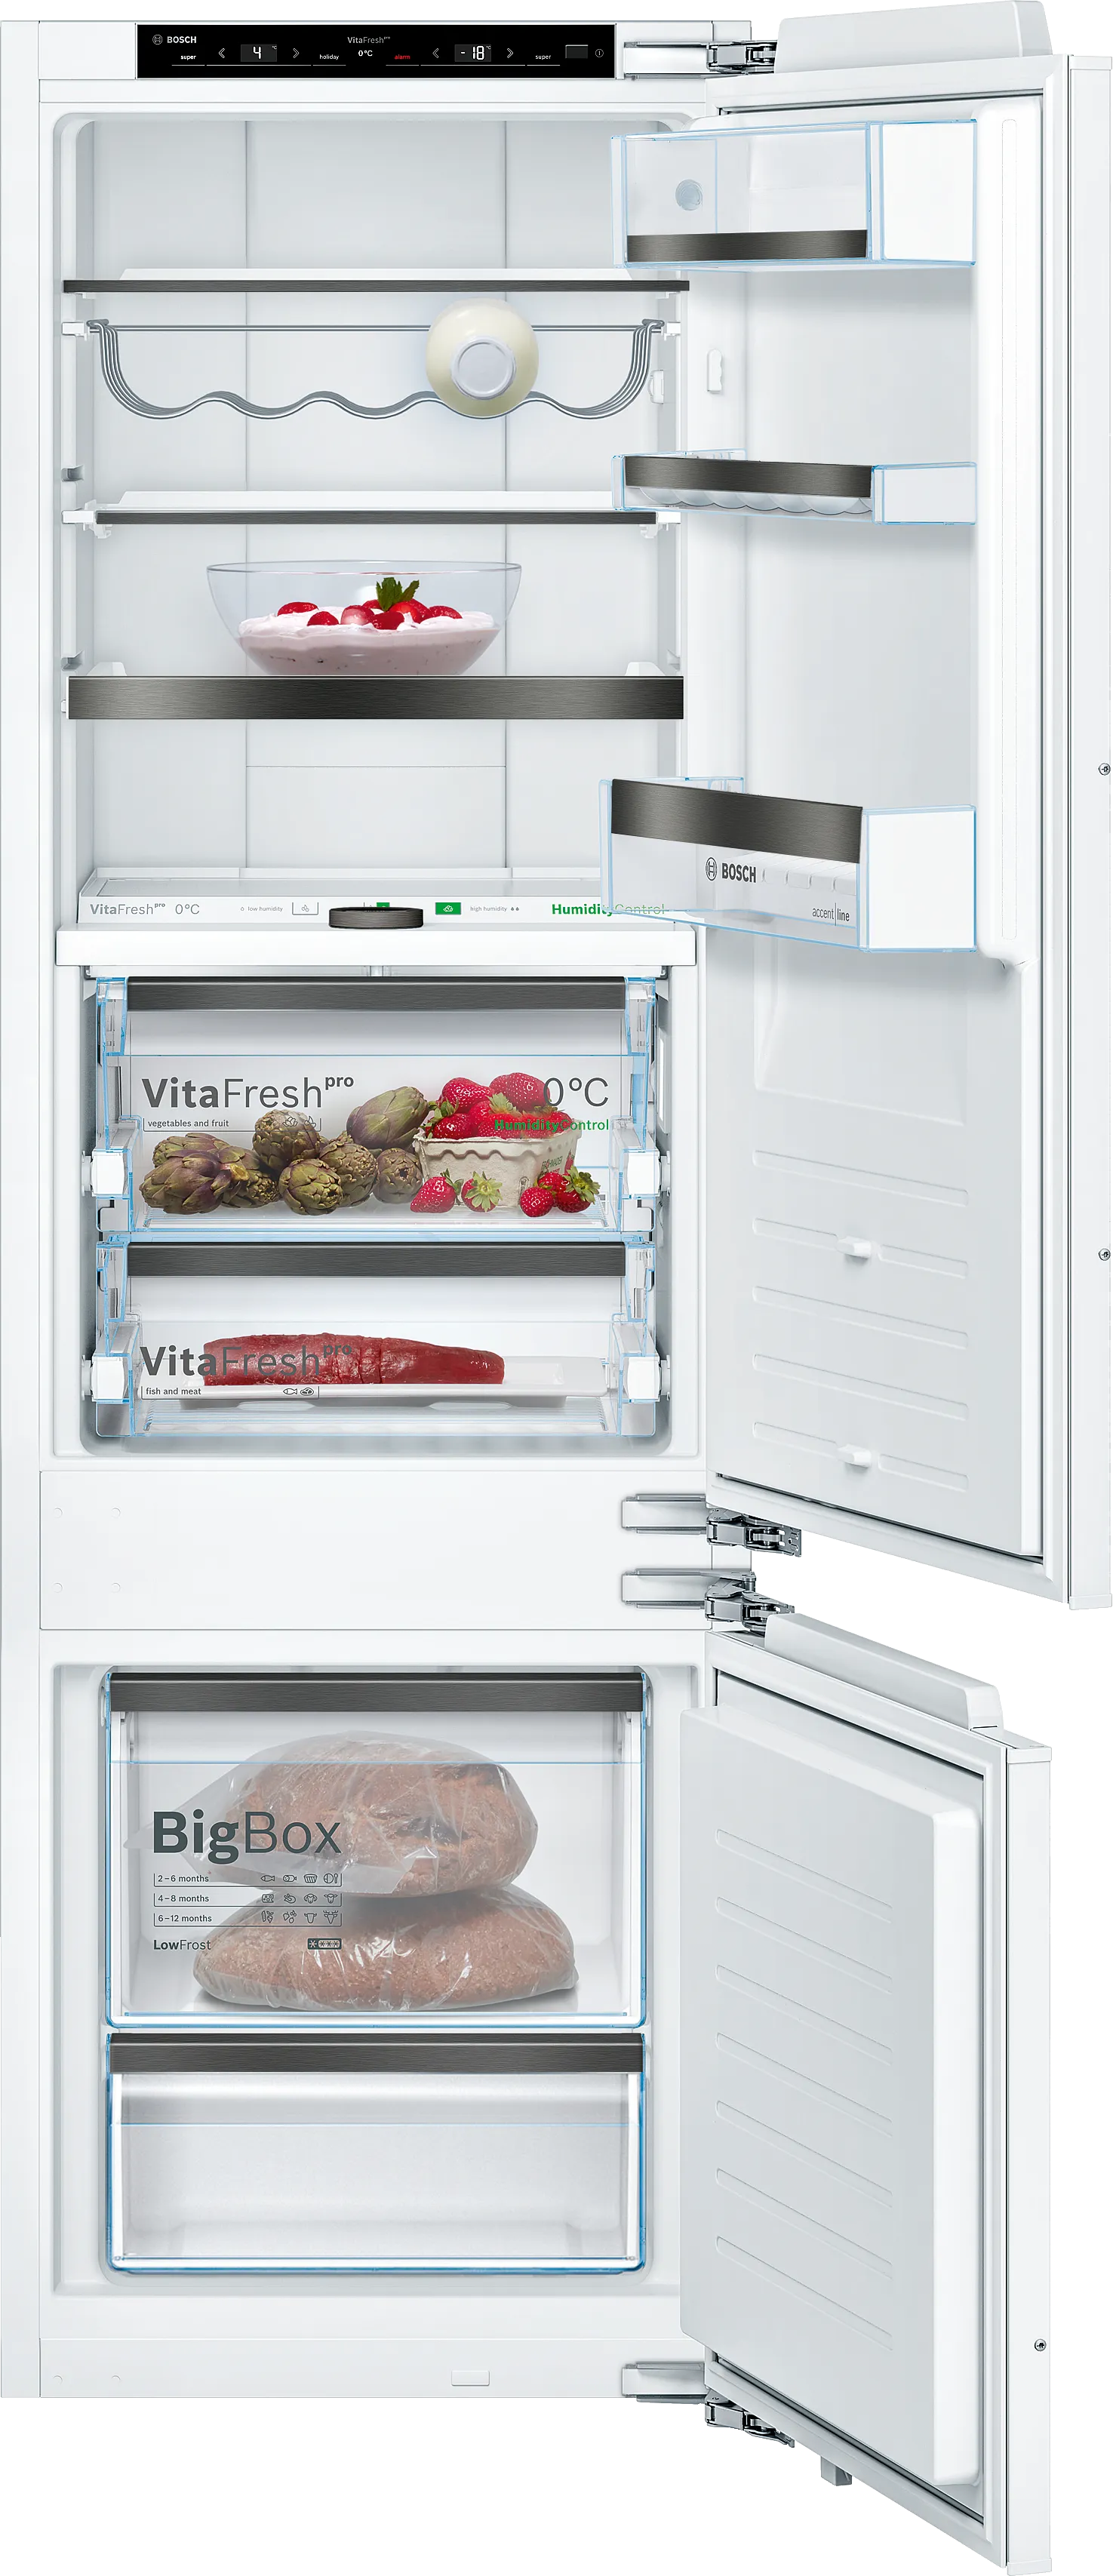 Serie 8 Vgradni hladilnik z zamrzovalnikom spodaj 177.2 x 55.8 cm ploščati tečaj z mehkim zapiranjem 